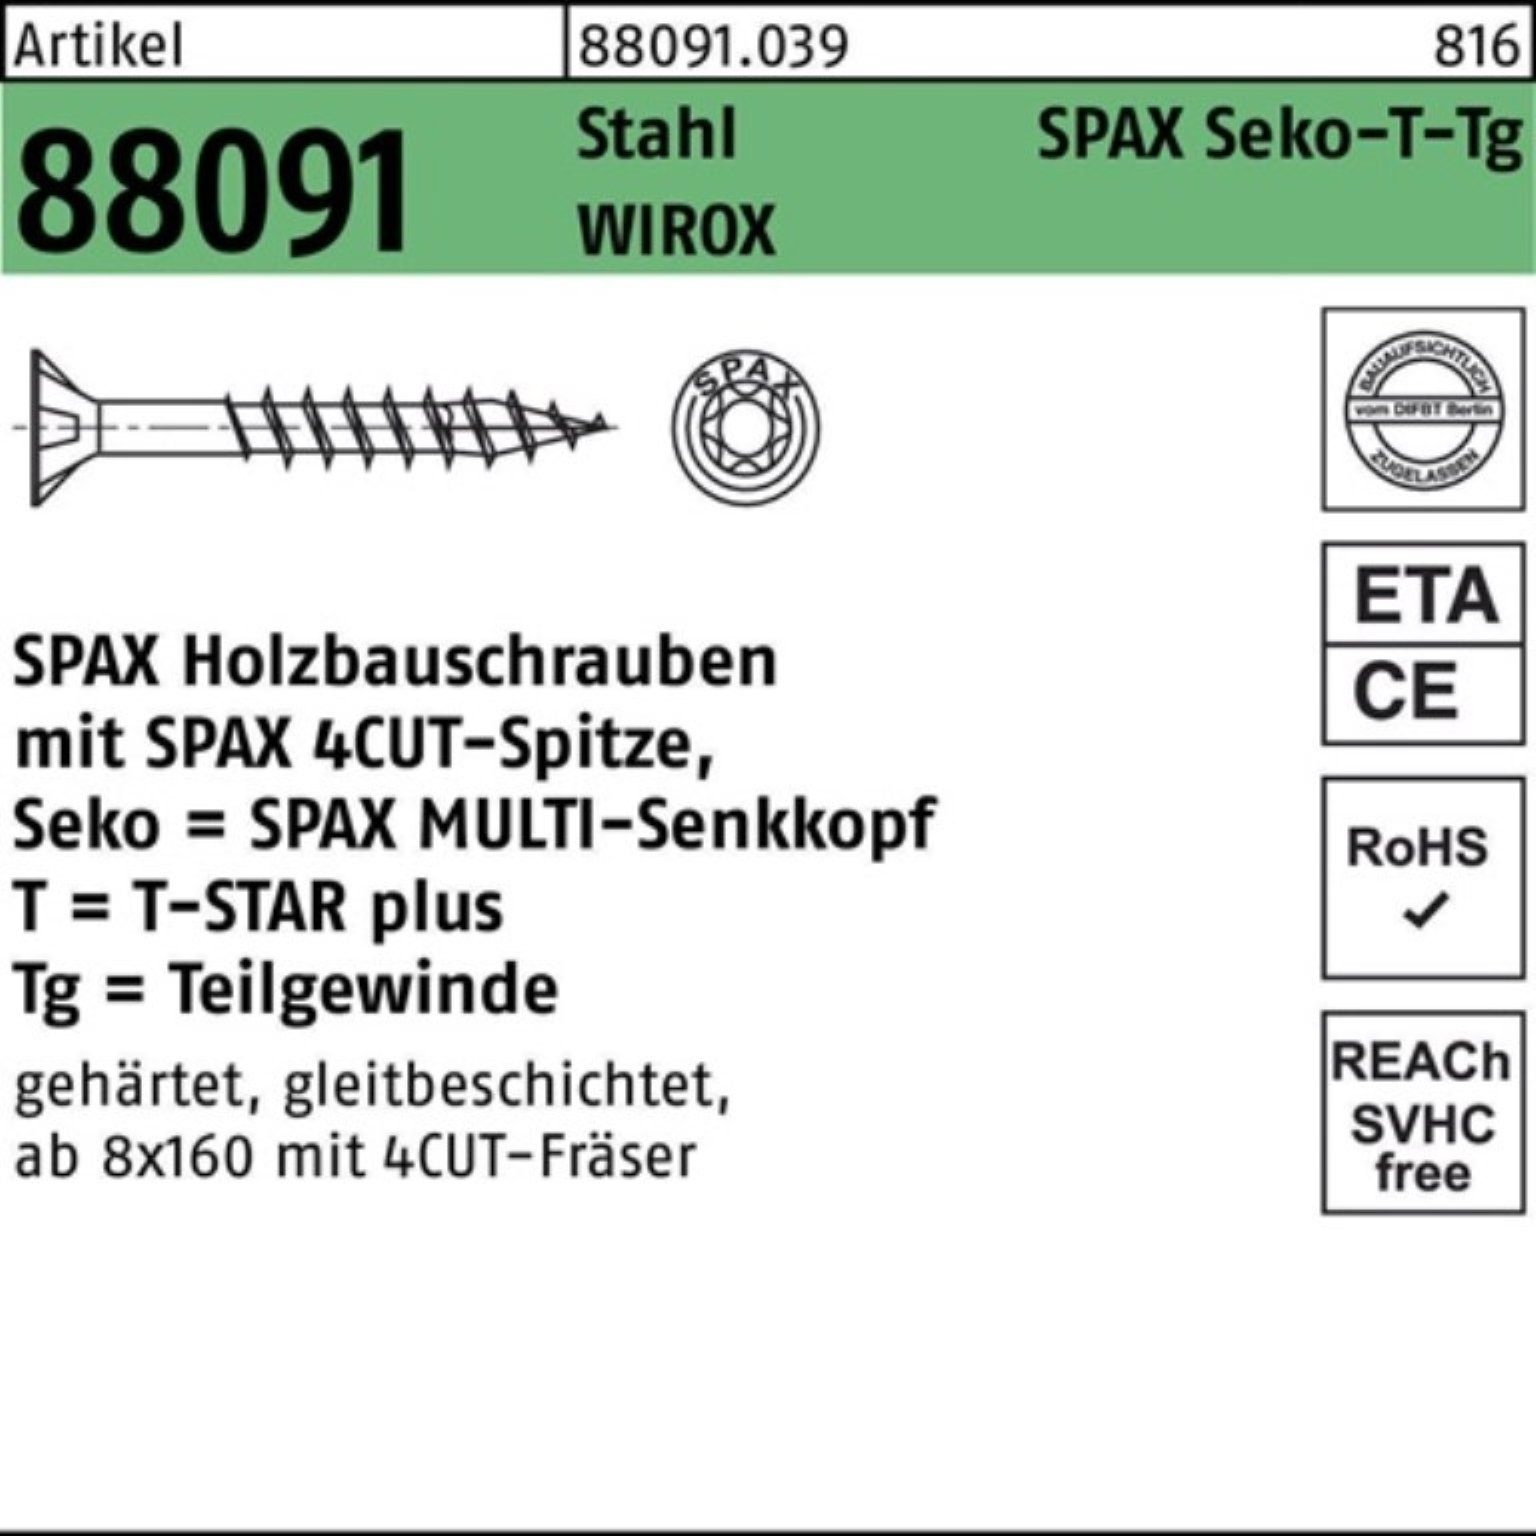 SPAX Pack SEKO/T-STAR 88091 TG R 180/80-T40 WIROX 8x Stahl Schraube Schraube 5 100er